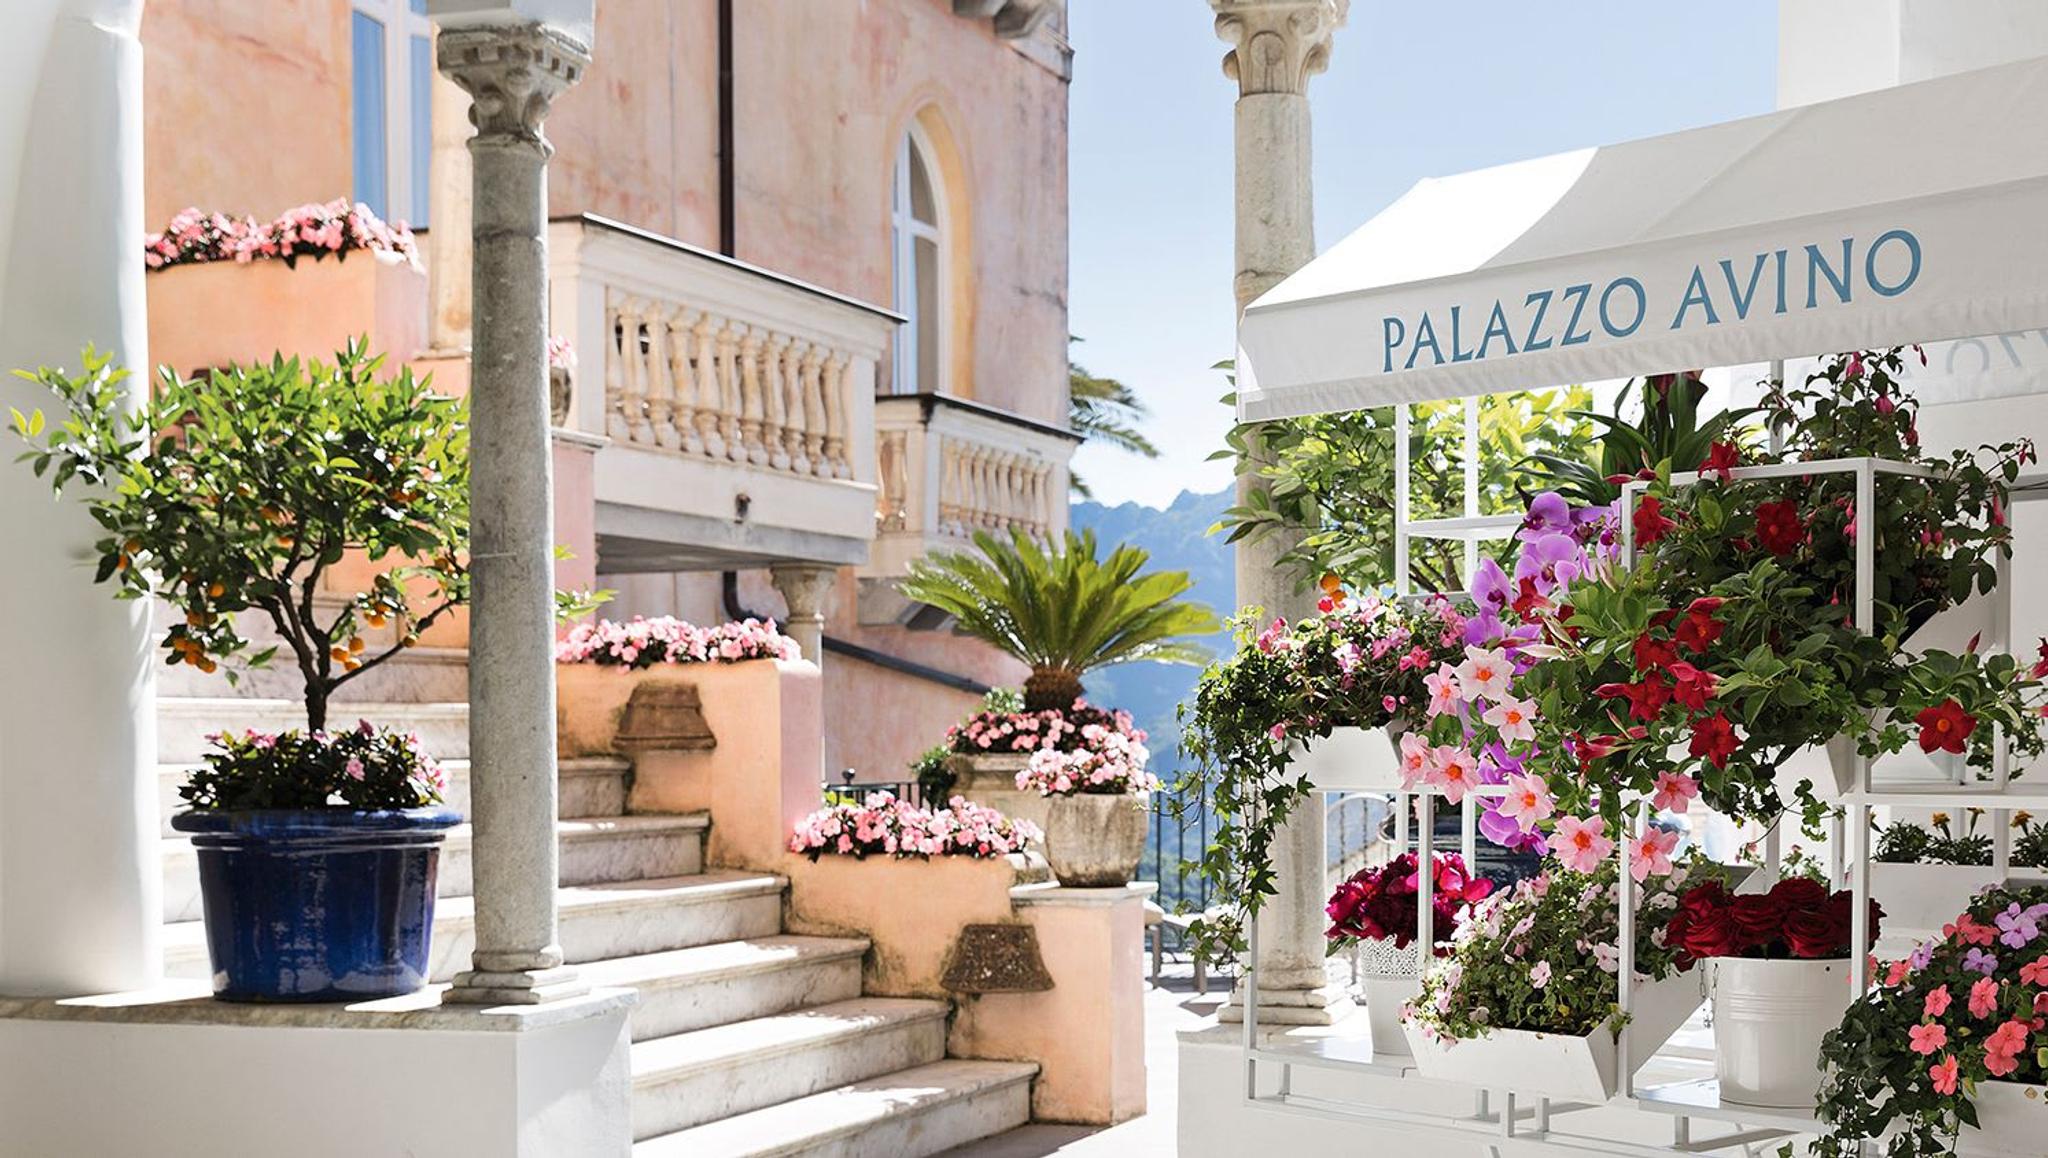 El sueño de la Costa Amalfitana: Palazzo Avino